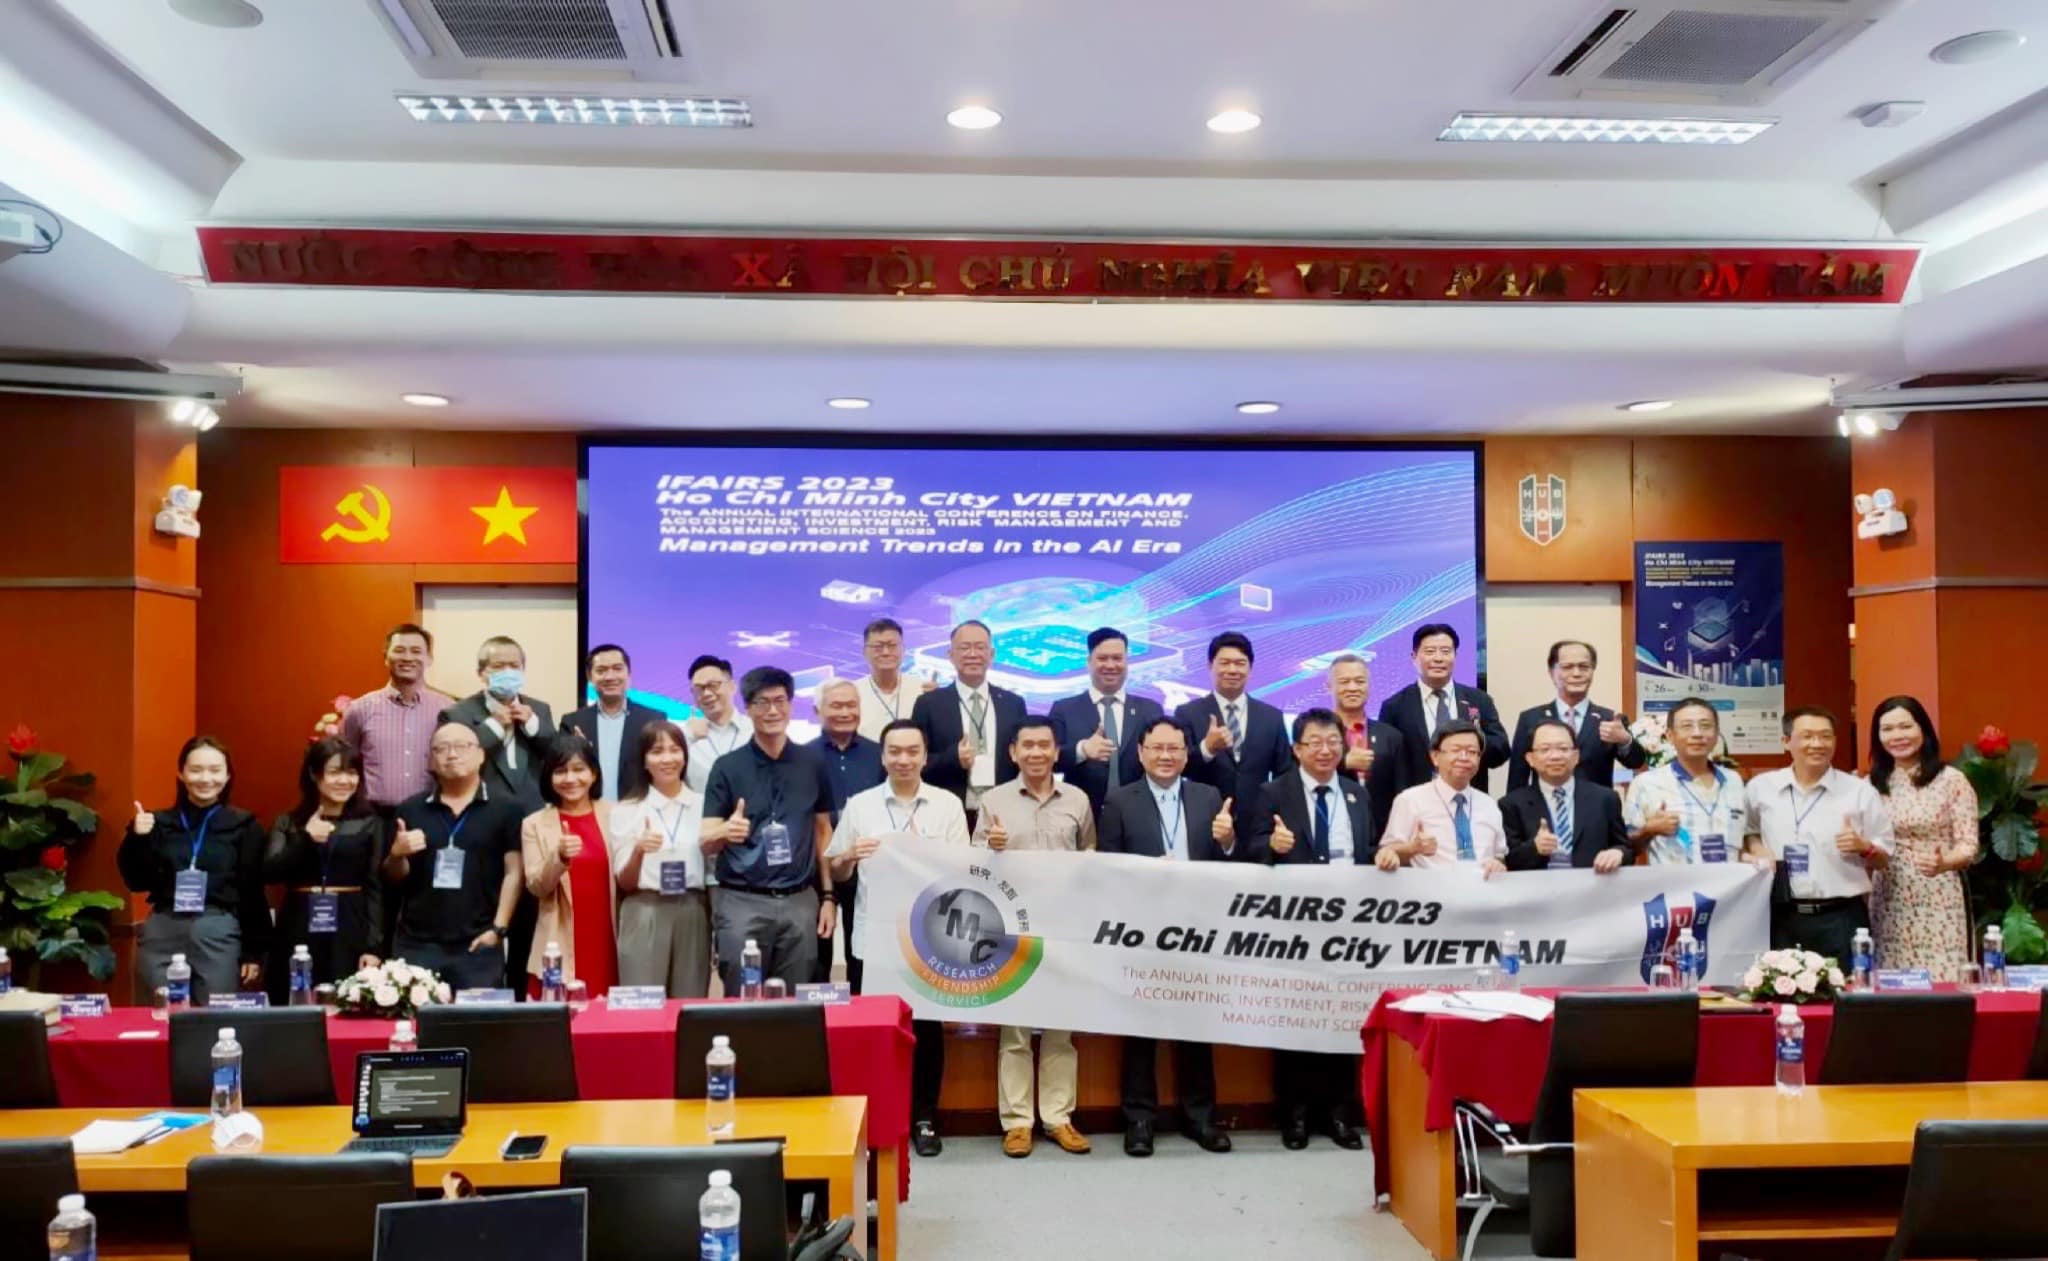 “Tọa đàm doanh nghiệp trẻ 2023” được tổ chức tại thành phố Hồ Chí Minh. (Ảnh: Lấy từ Facebook “張三丰”)